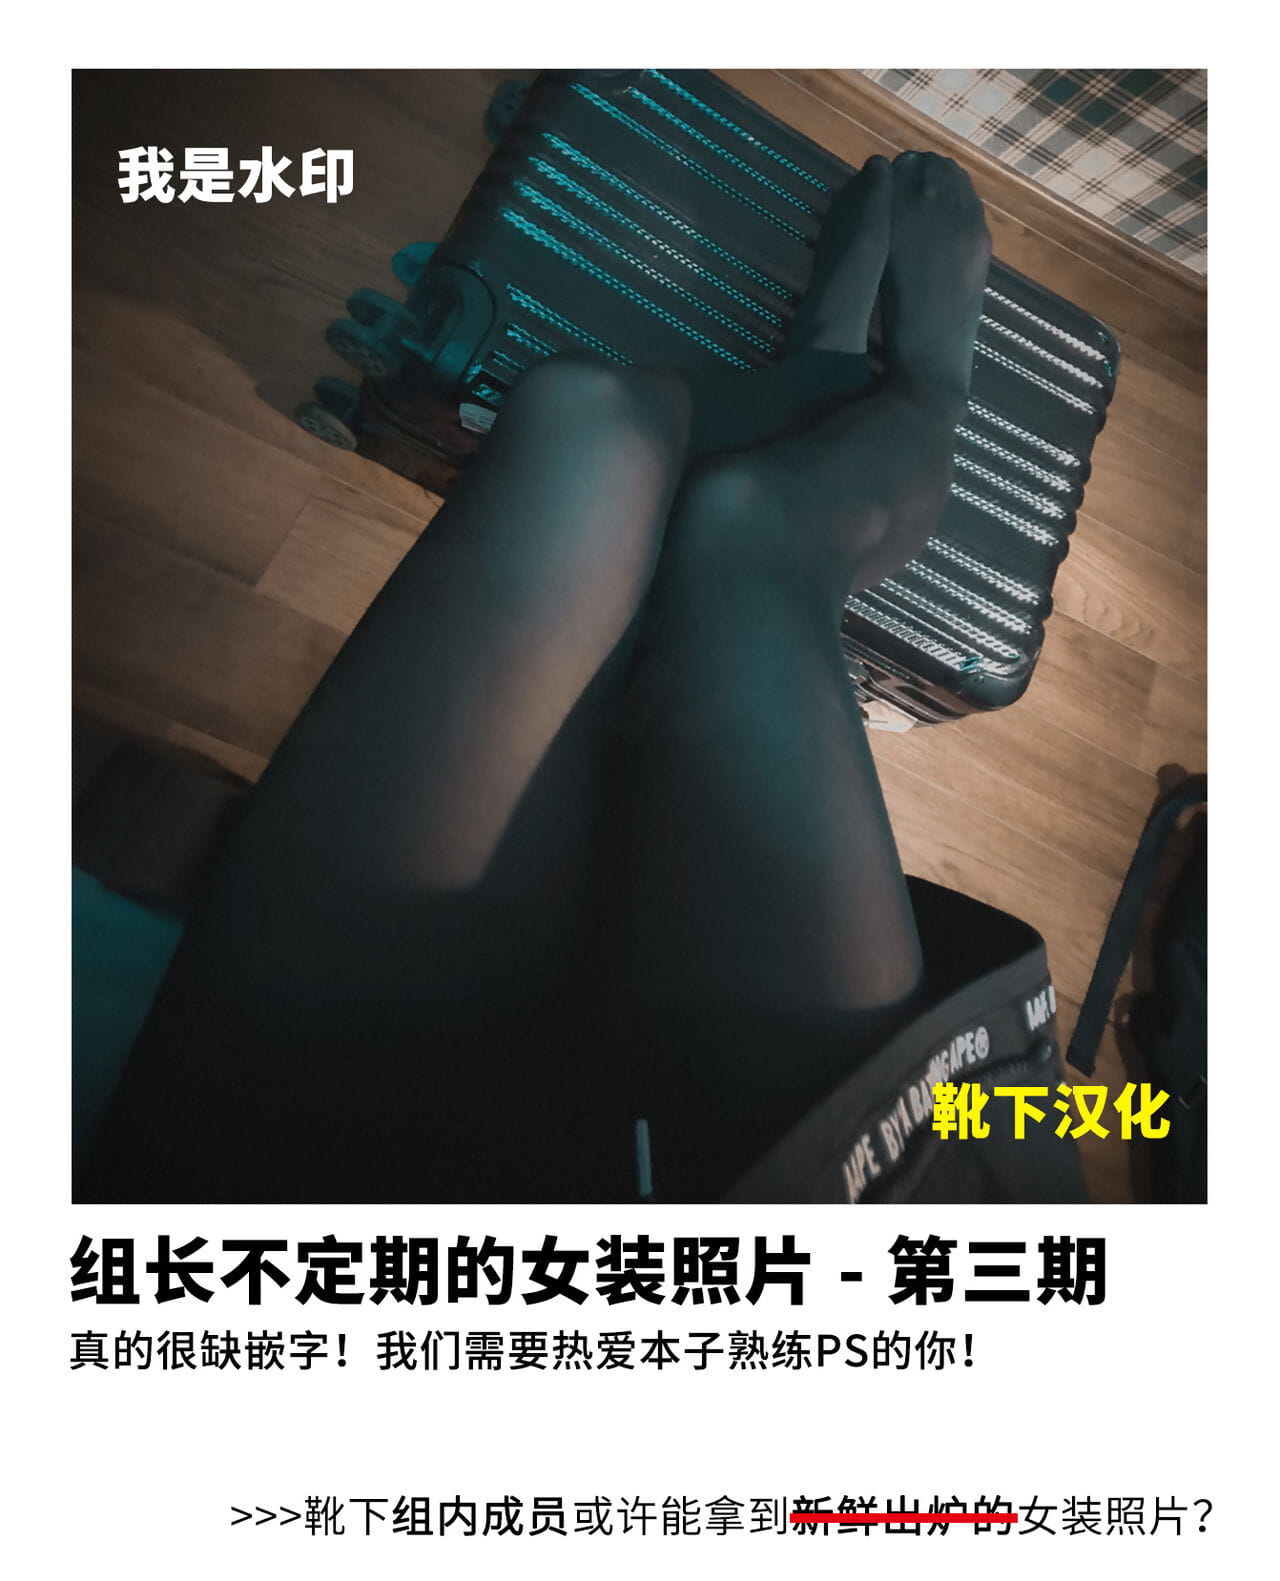 москитная Человек okaa Сан угощение Китайский 靴下汉化组 часть 3